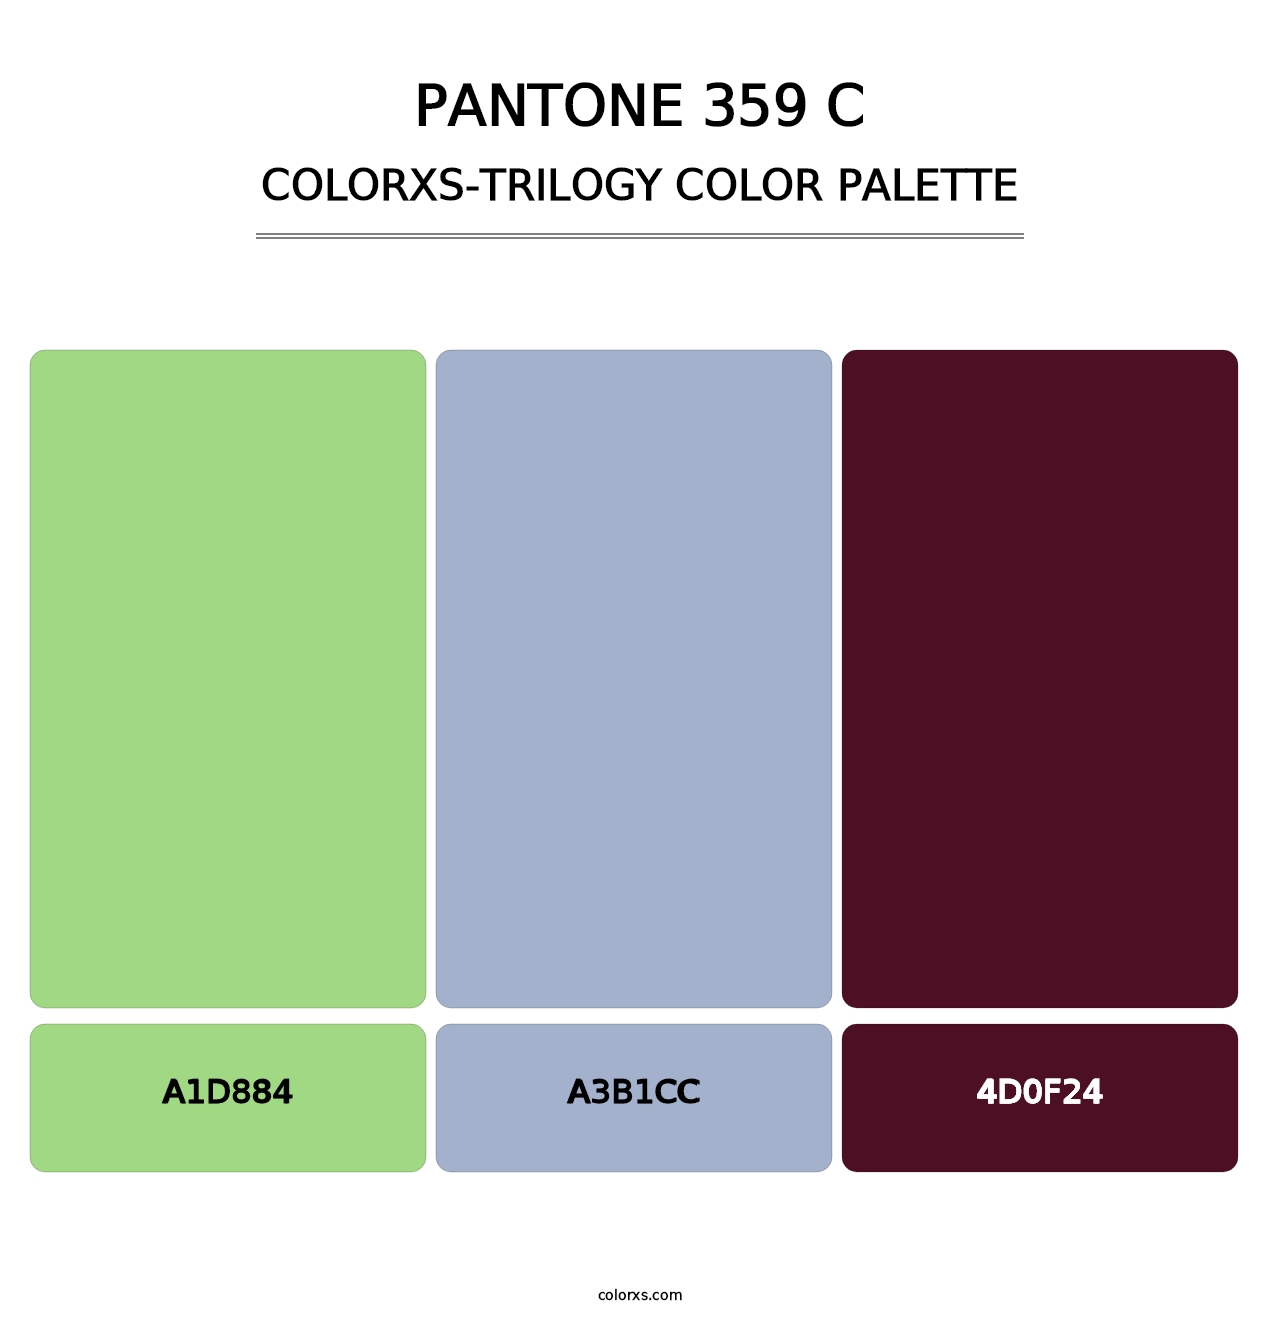 PANTONE 359 C - Colorxs Trilogy Palette